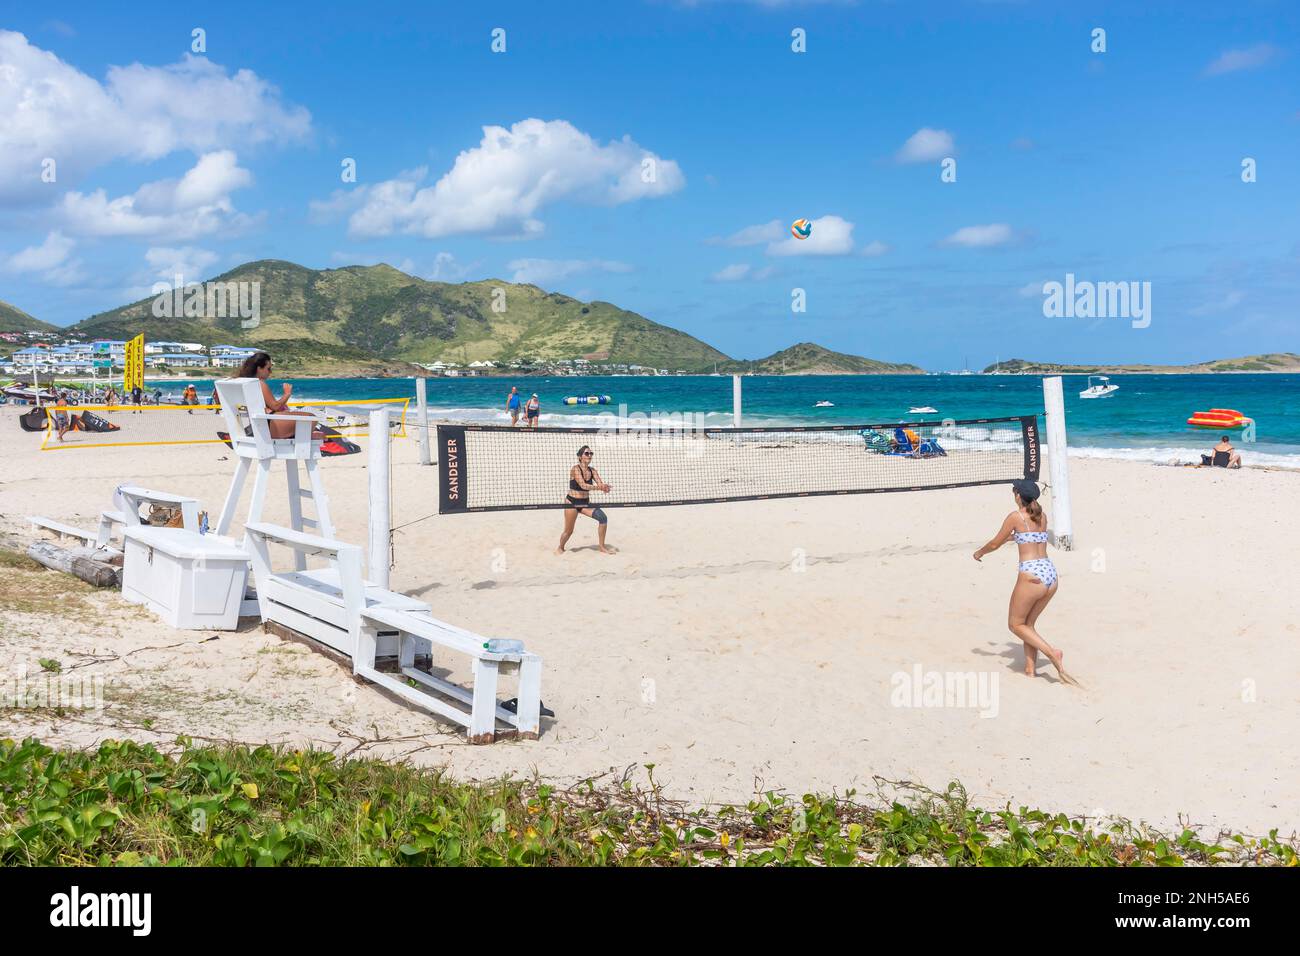 Femmes jouant au Beach-volley, Orient Bay (Baie orientale), St Martin (Saint-Martin), Petites Antilles, Caraïbes Banque D'Images